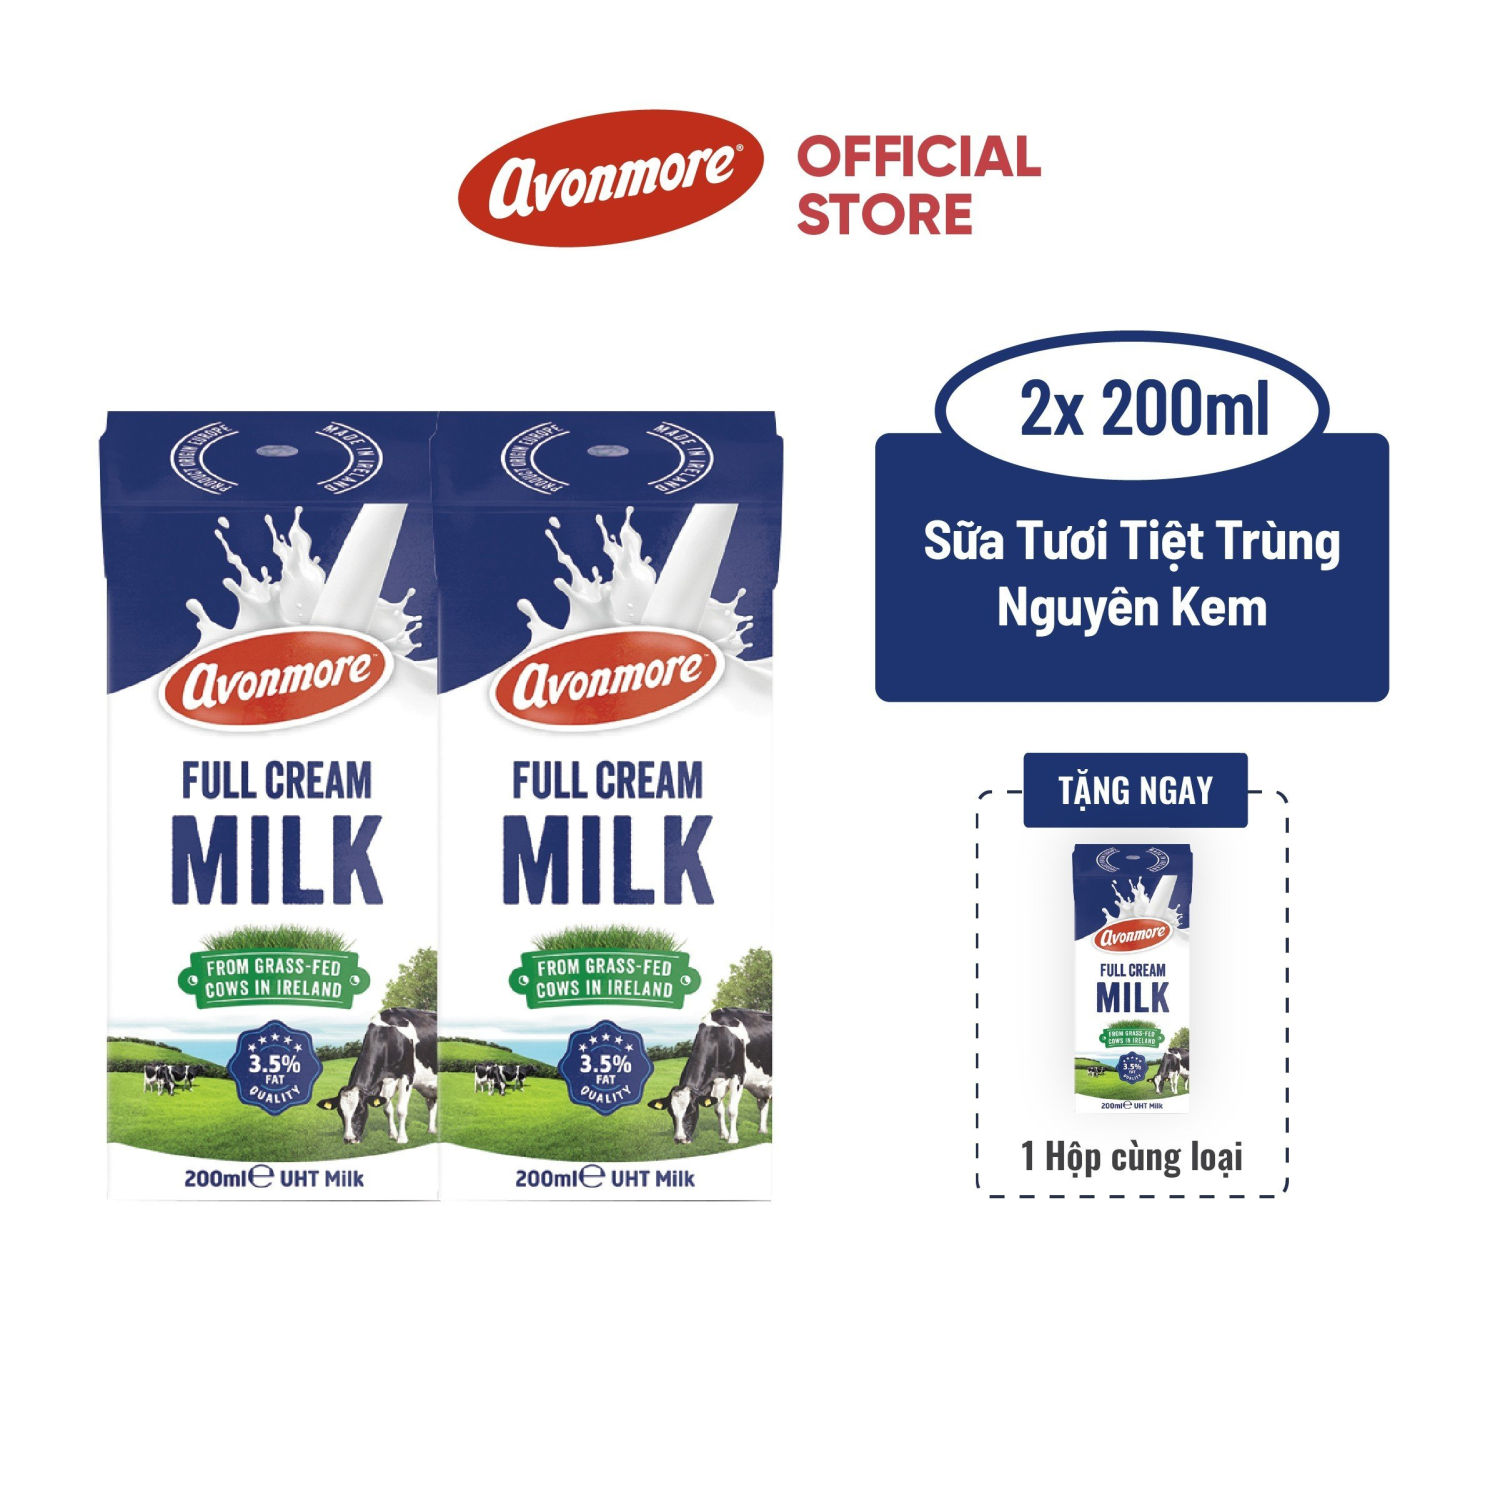 Sữa tươi tiệt trùng Avonmore nguyên kem 200ml - Tặng hộp cùng loại